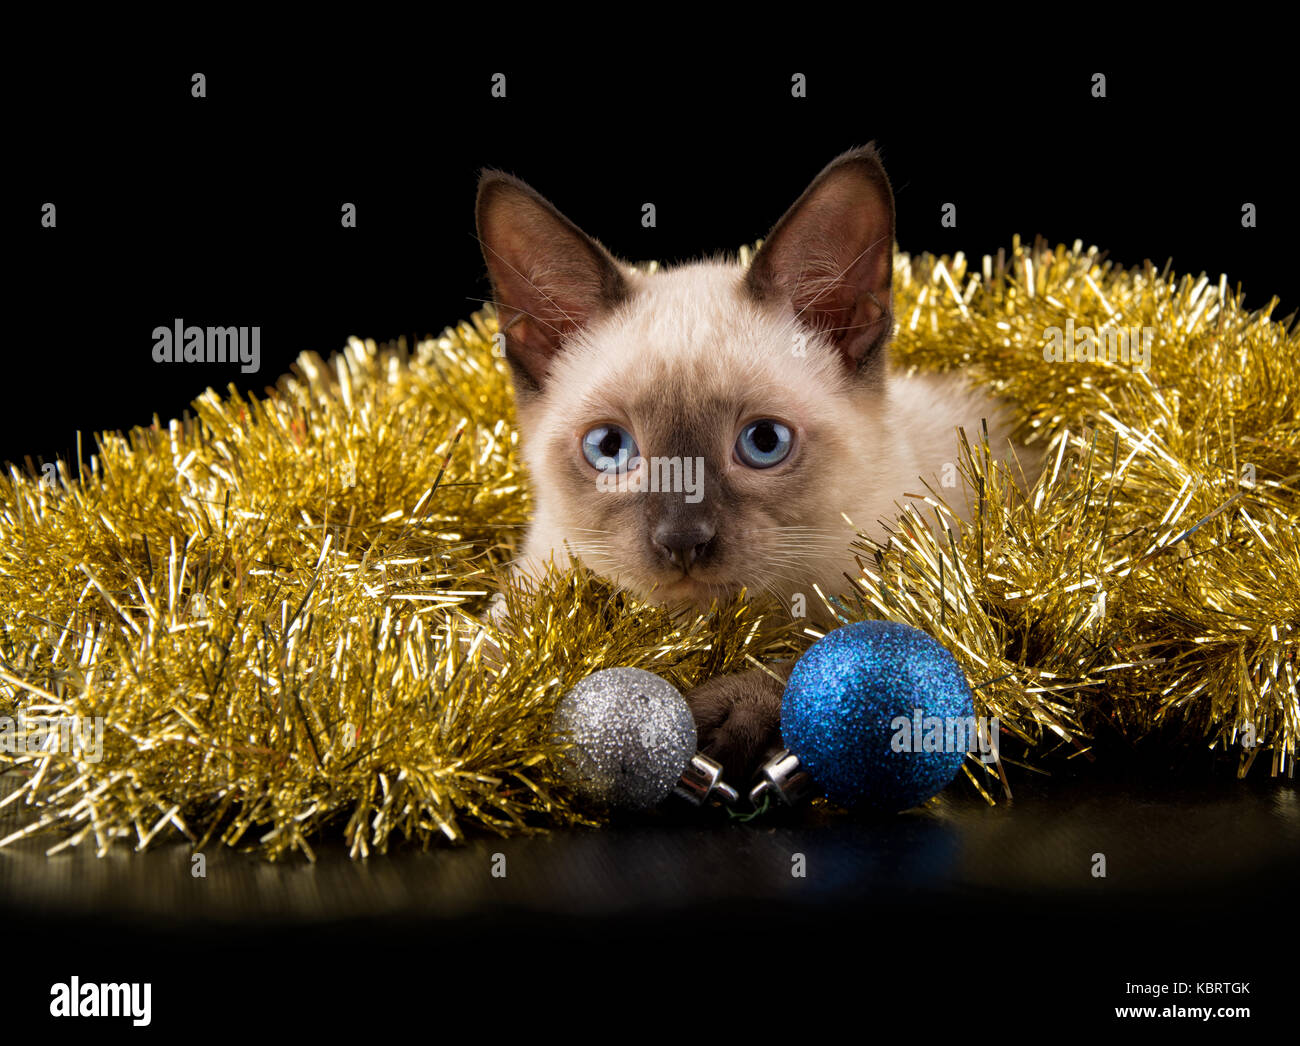 Beau chaton siamois dans l'or de guirlandes de Noël, avec deux boules de cuir, sur fond noir Banque D'Images